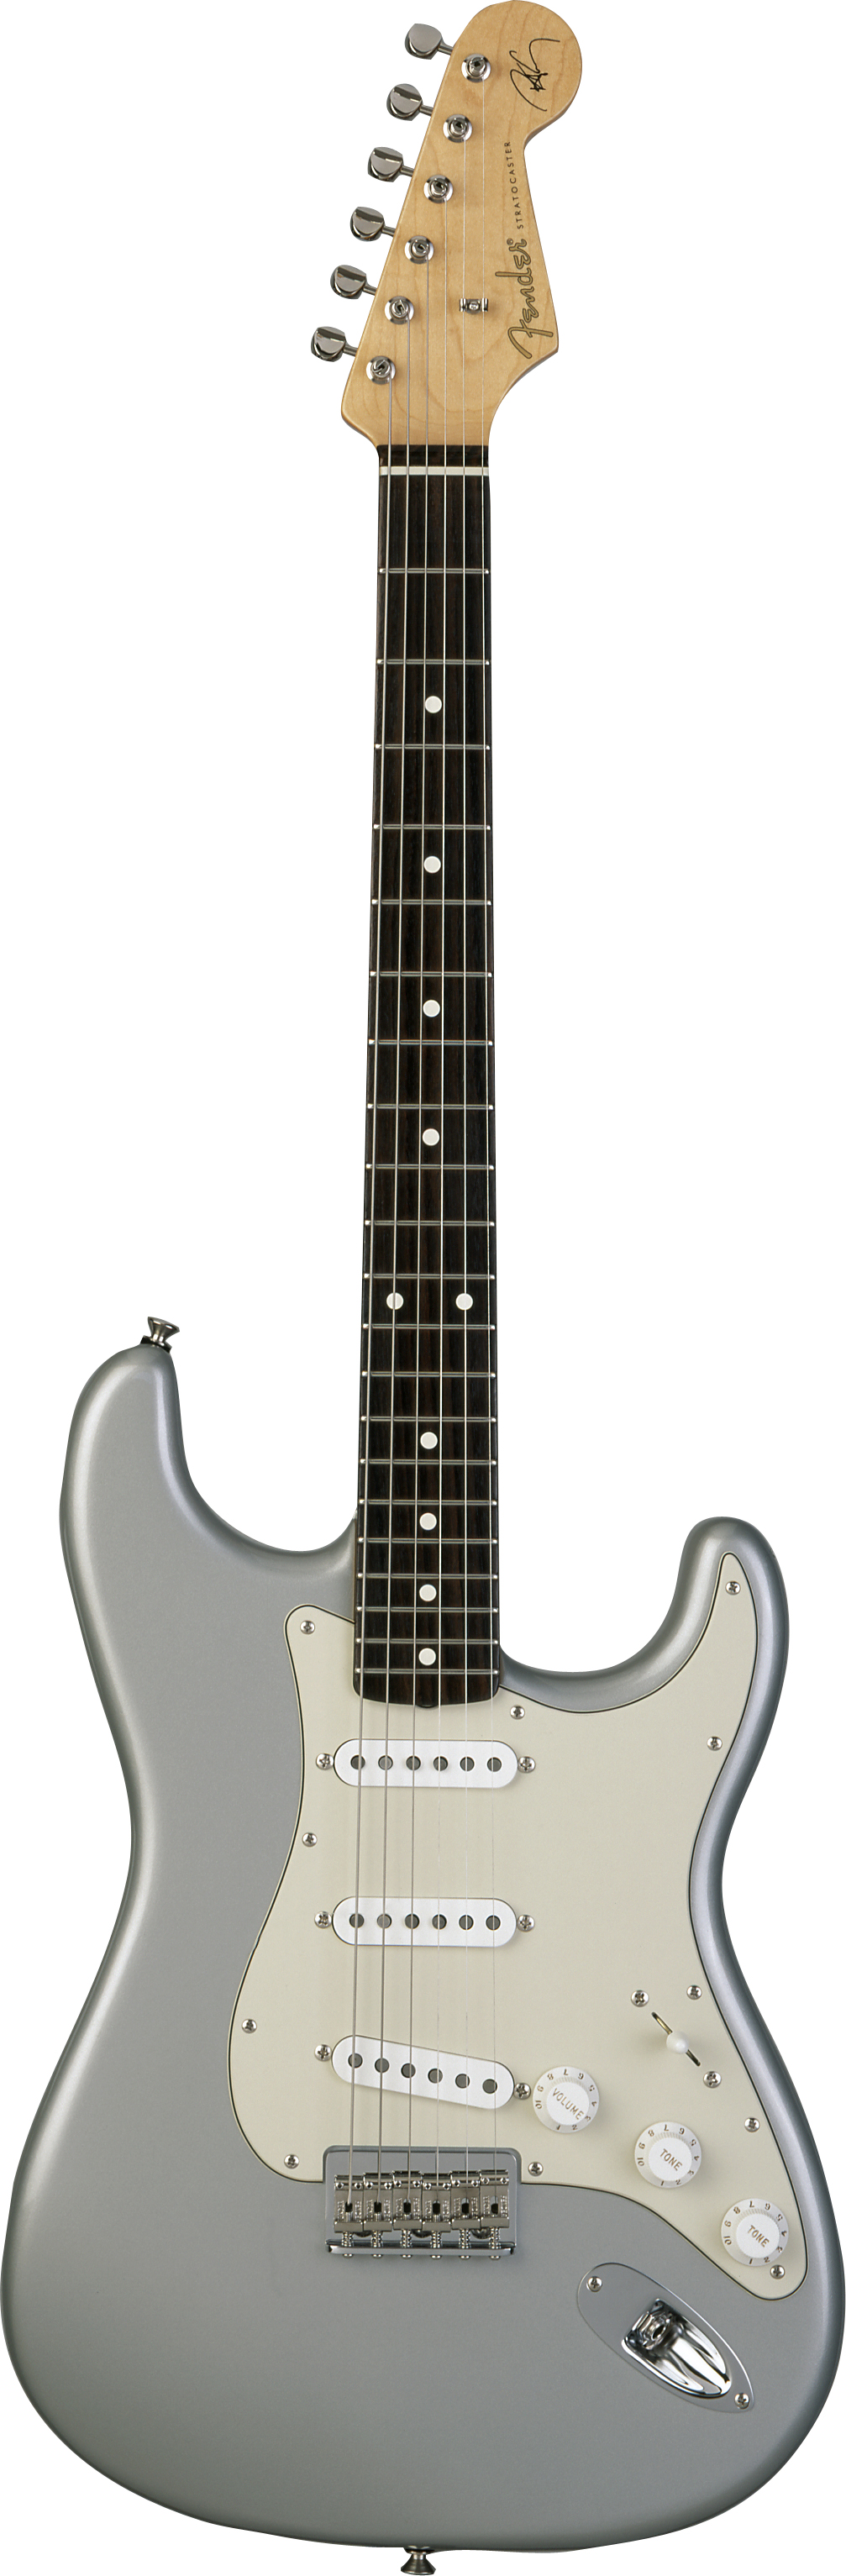 Robert Cray Stratocaster Inca Silver RW